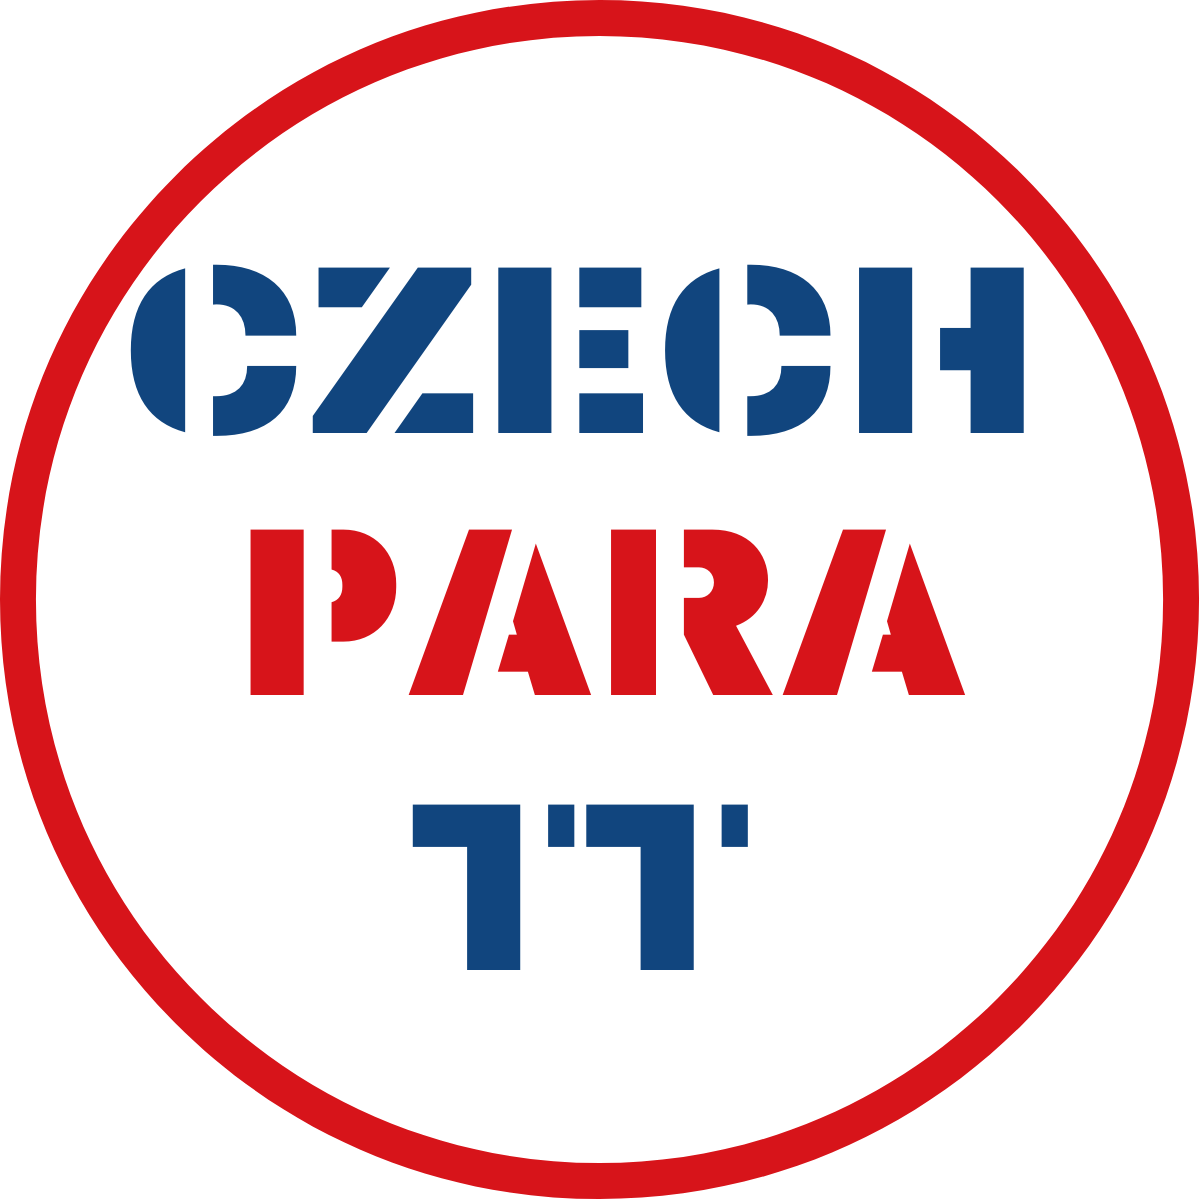 Czech Para TT